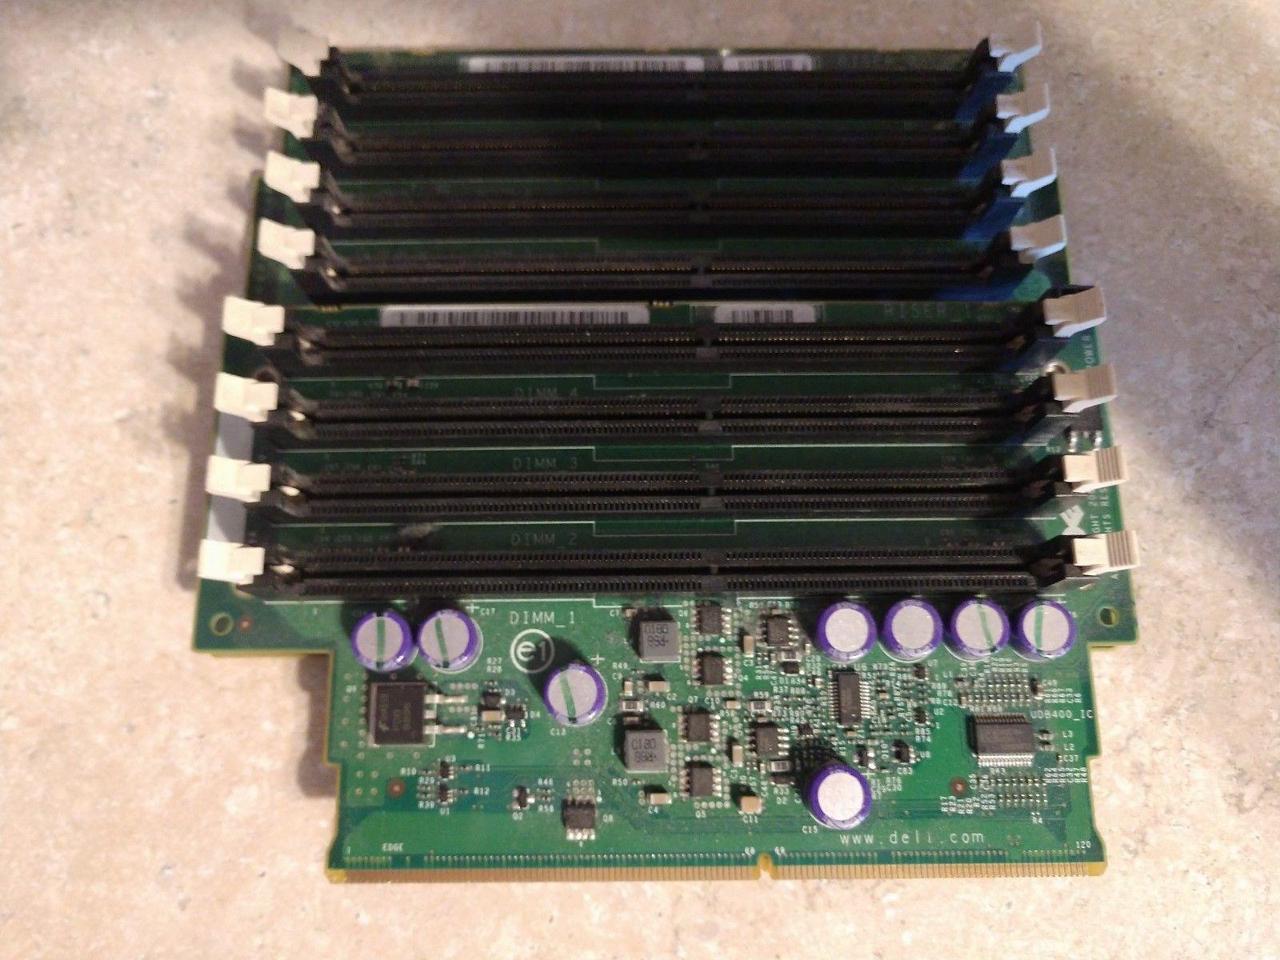 Dell OEM Precision 690 / T7400 Memory Riser Board 1,2 TY853